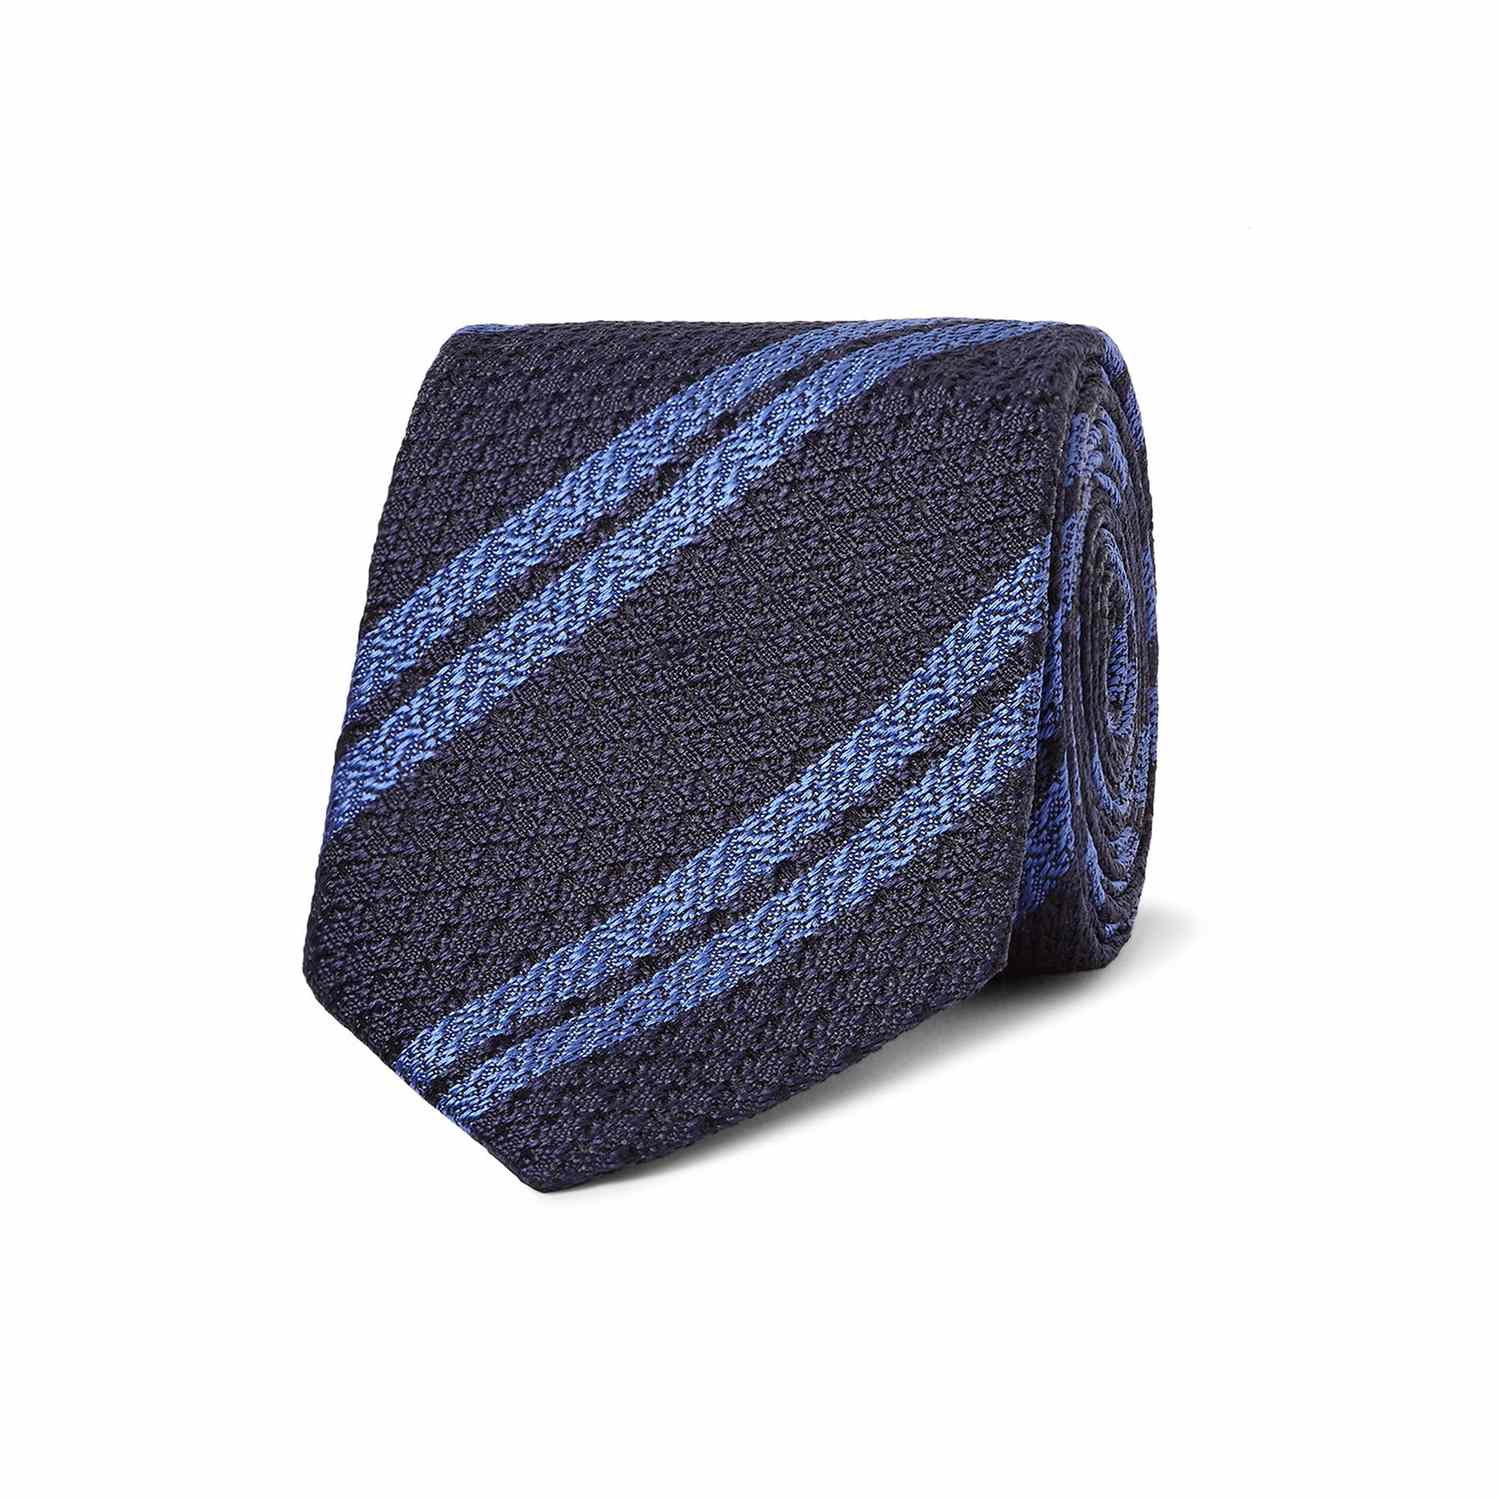 Classic Suit: Tie